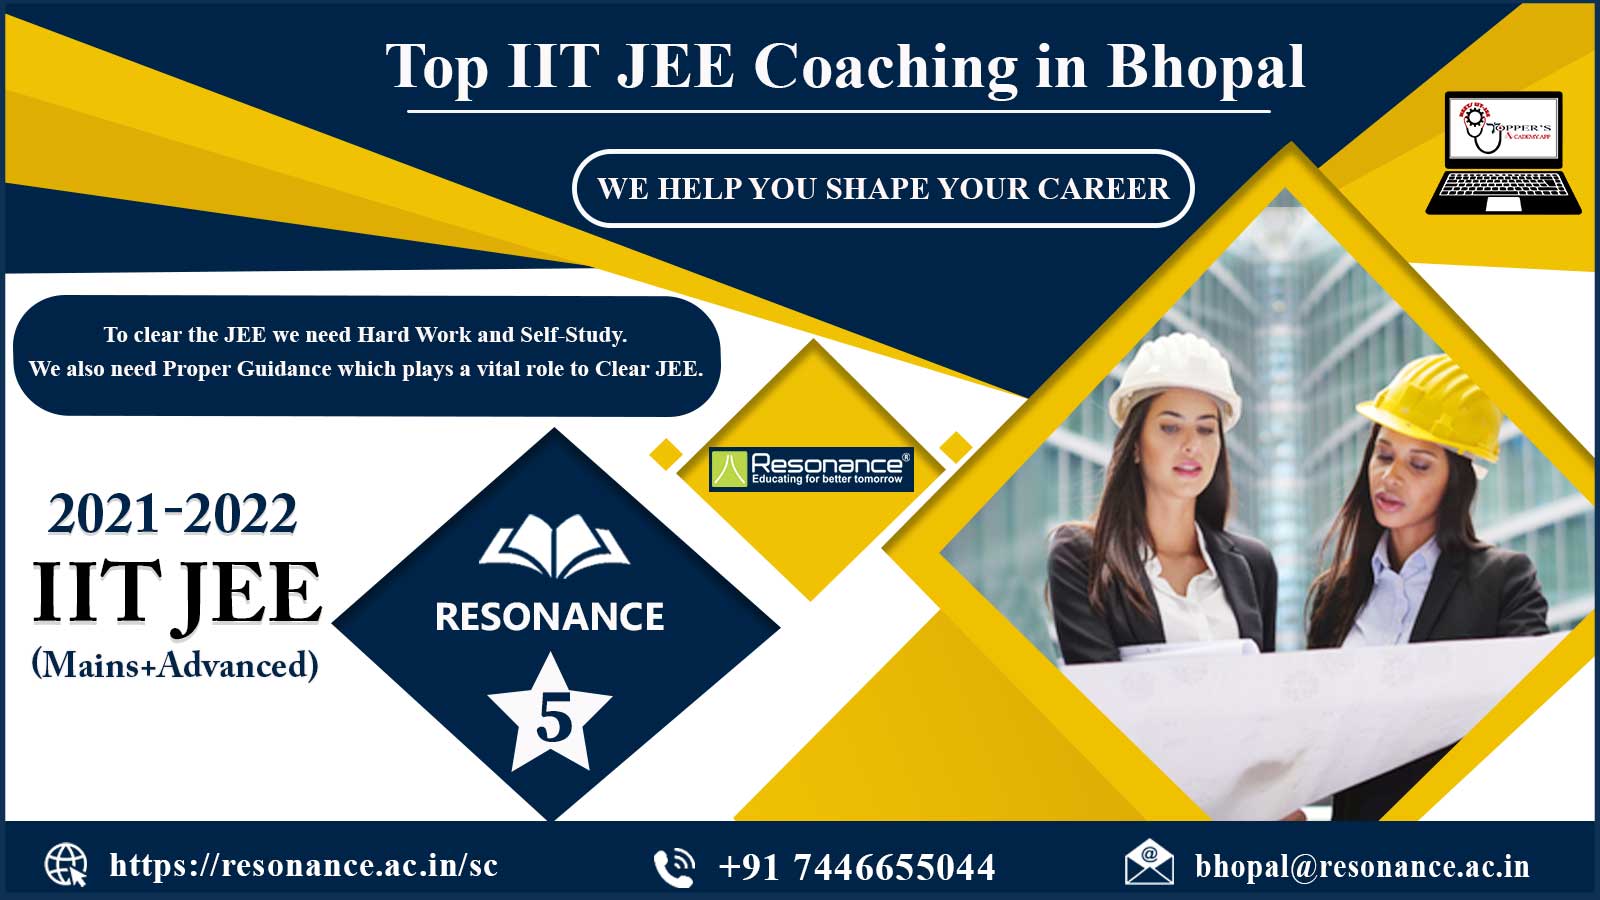 Resonance IIT JEE Coaching in Bhopal